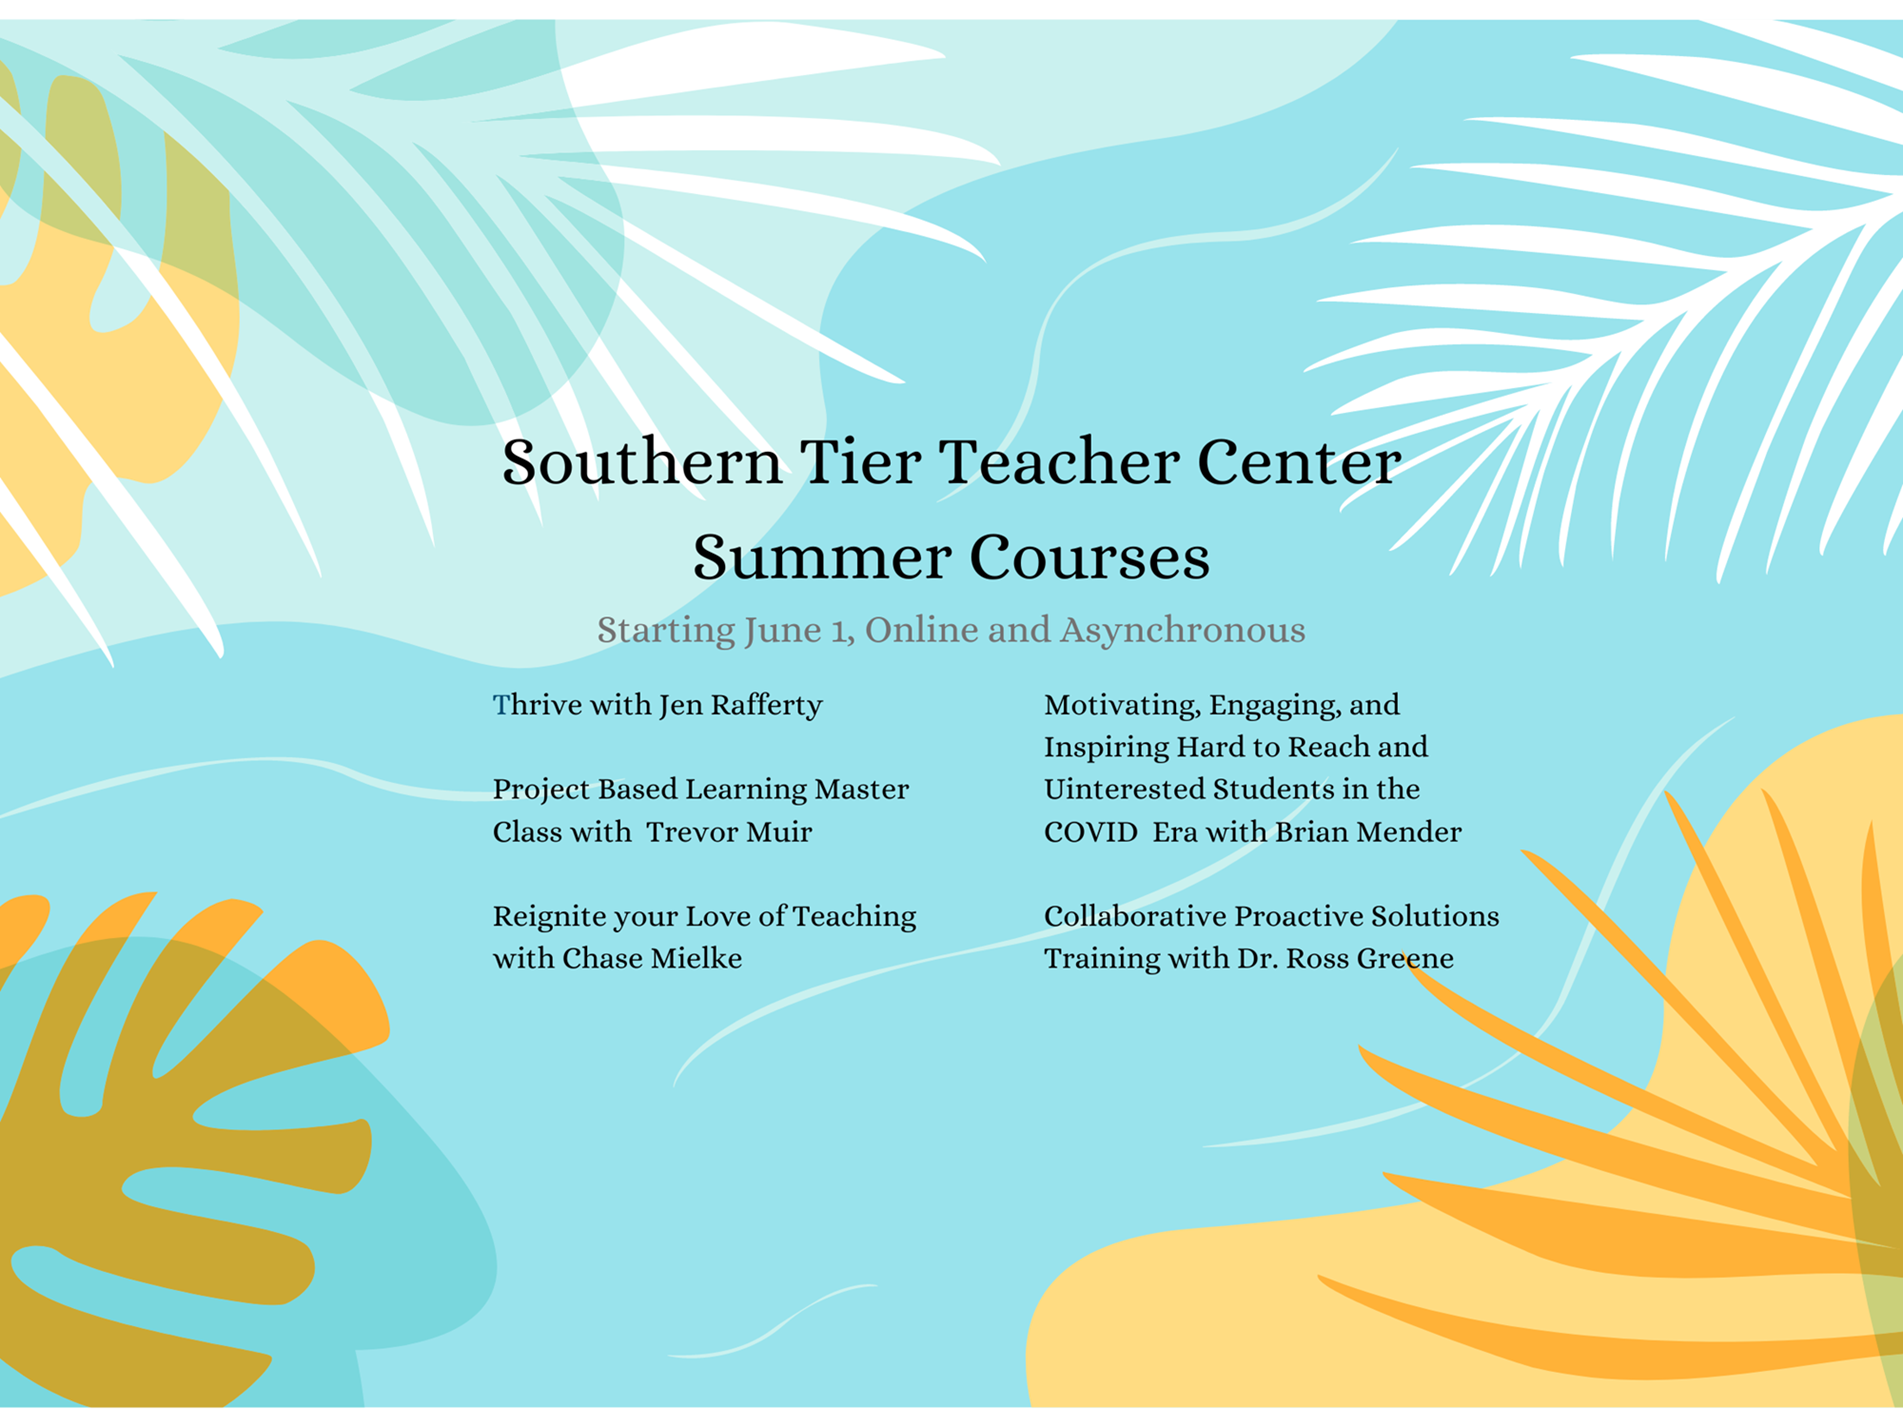 Southern Tier Teacher Center Summer Courses